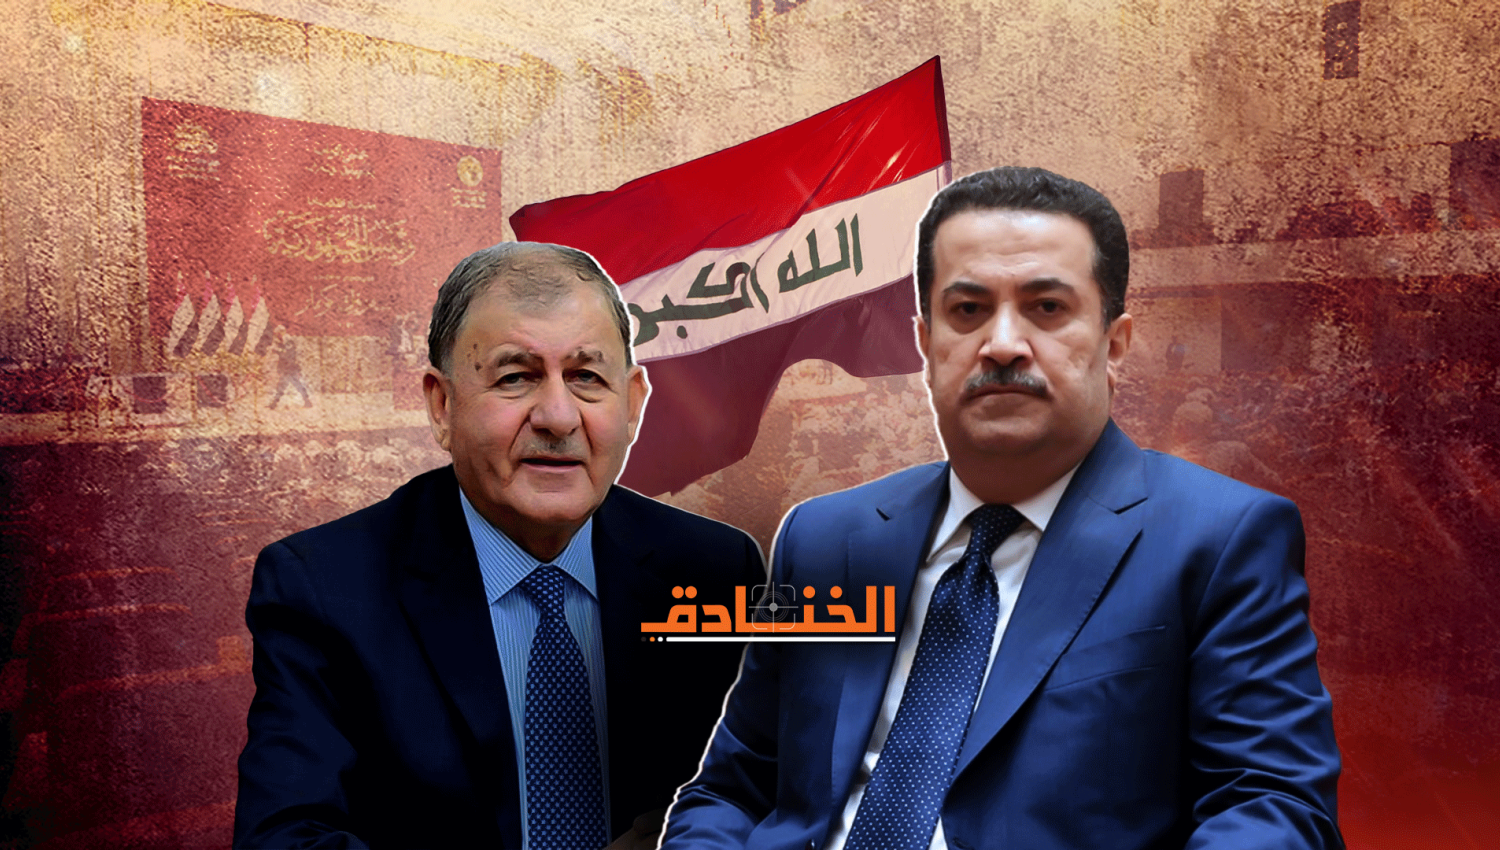 العراق بعد الرئاسة بانتظار "حكومة إنجاز"